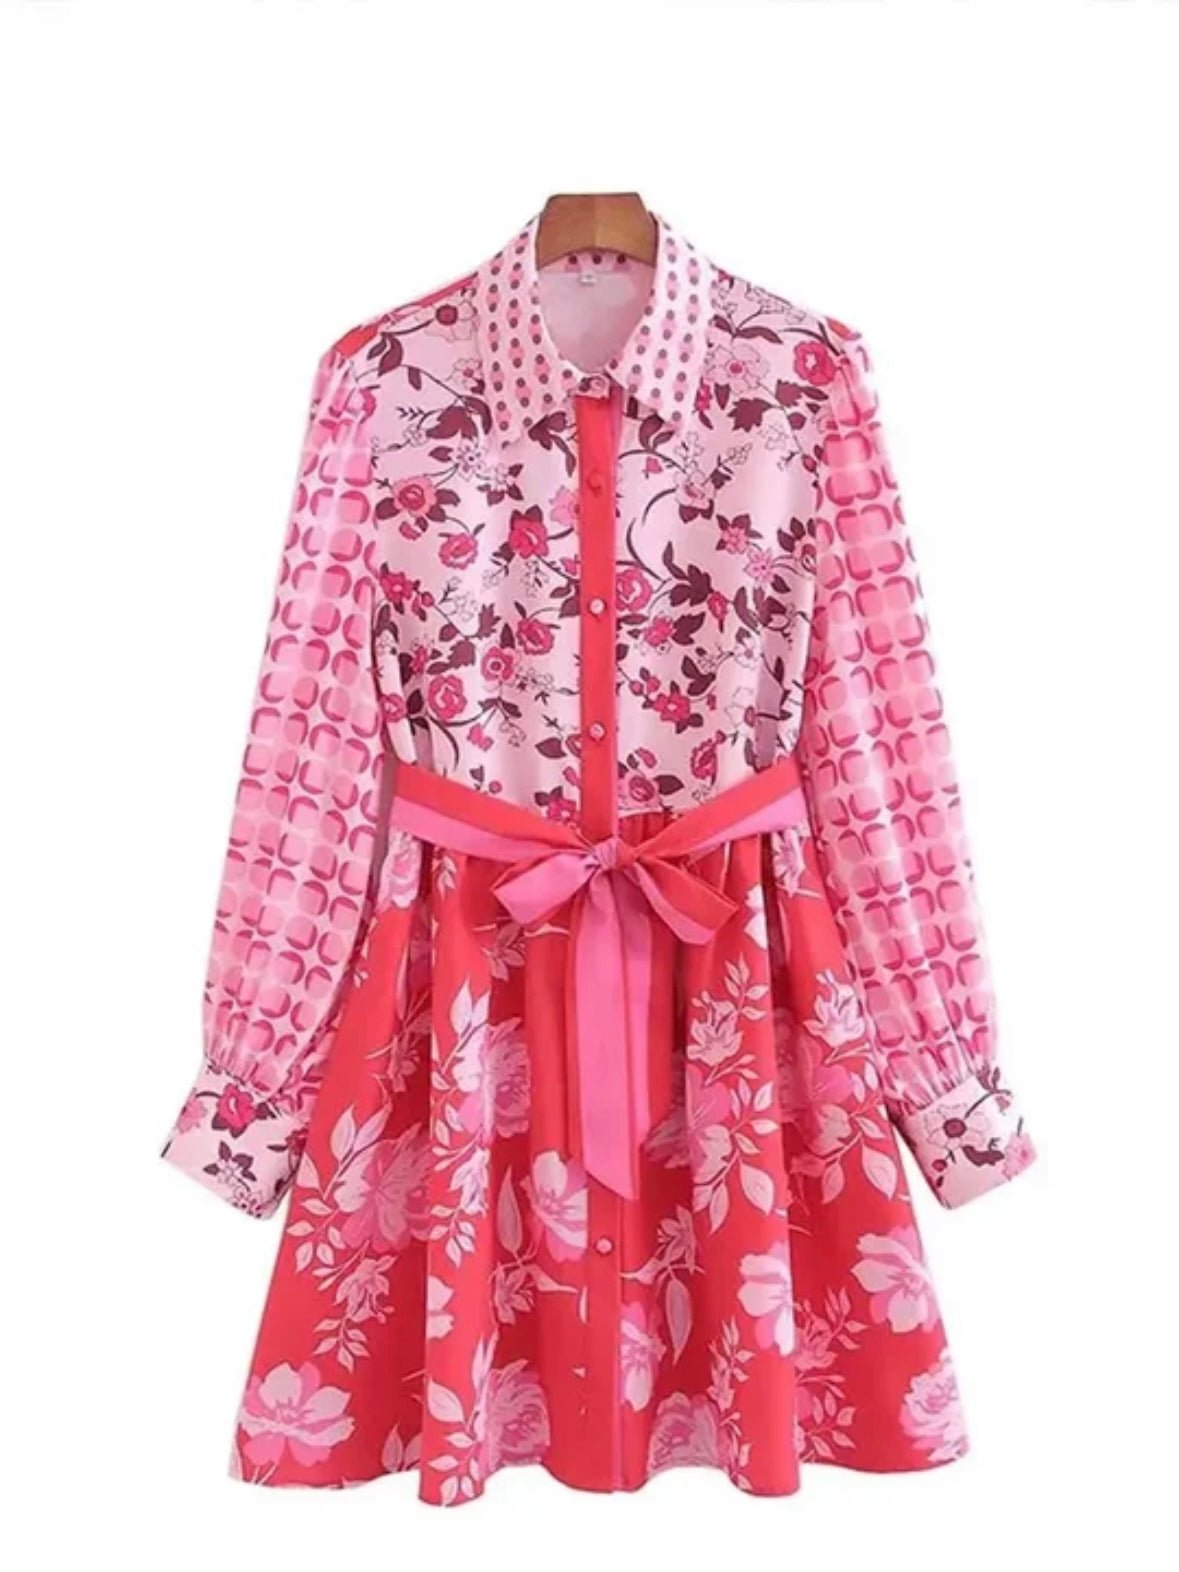 Pink floral short dress - Wapas